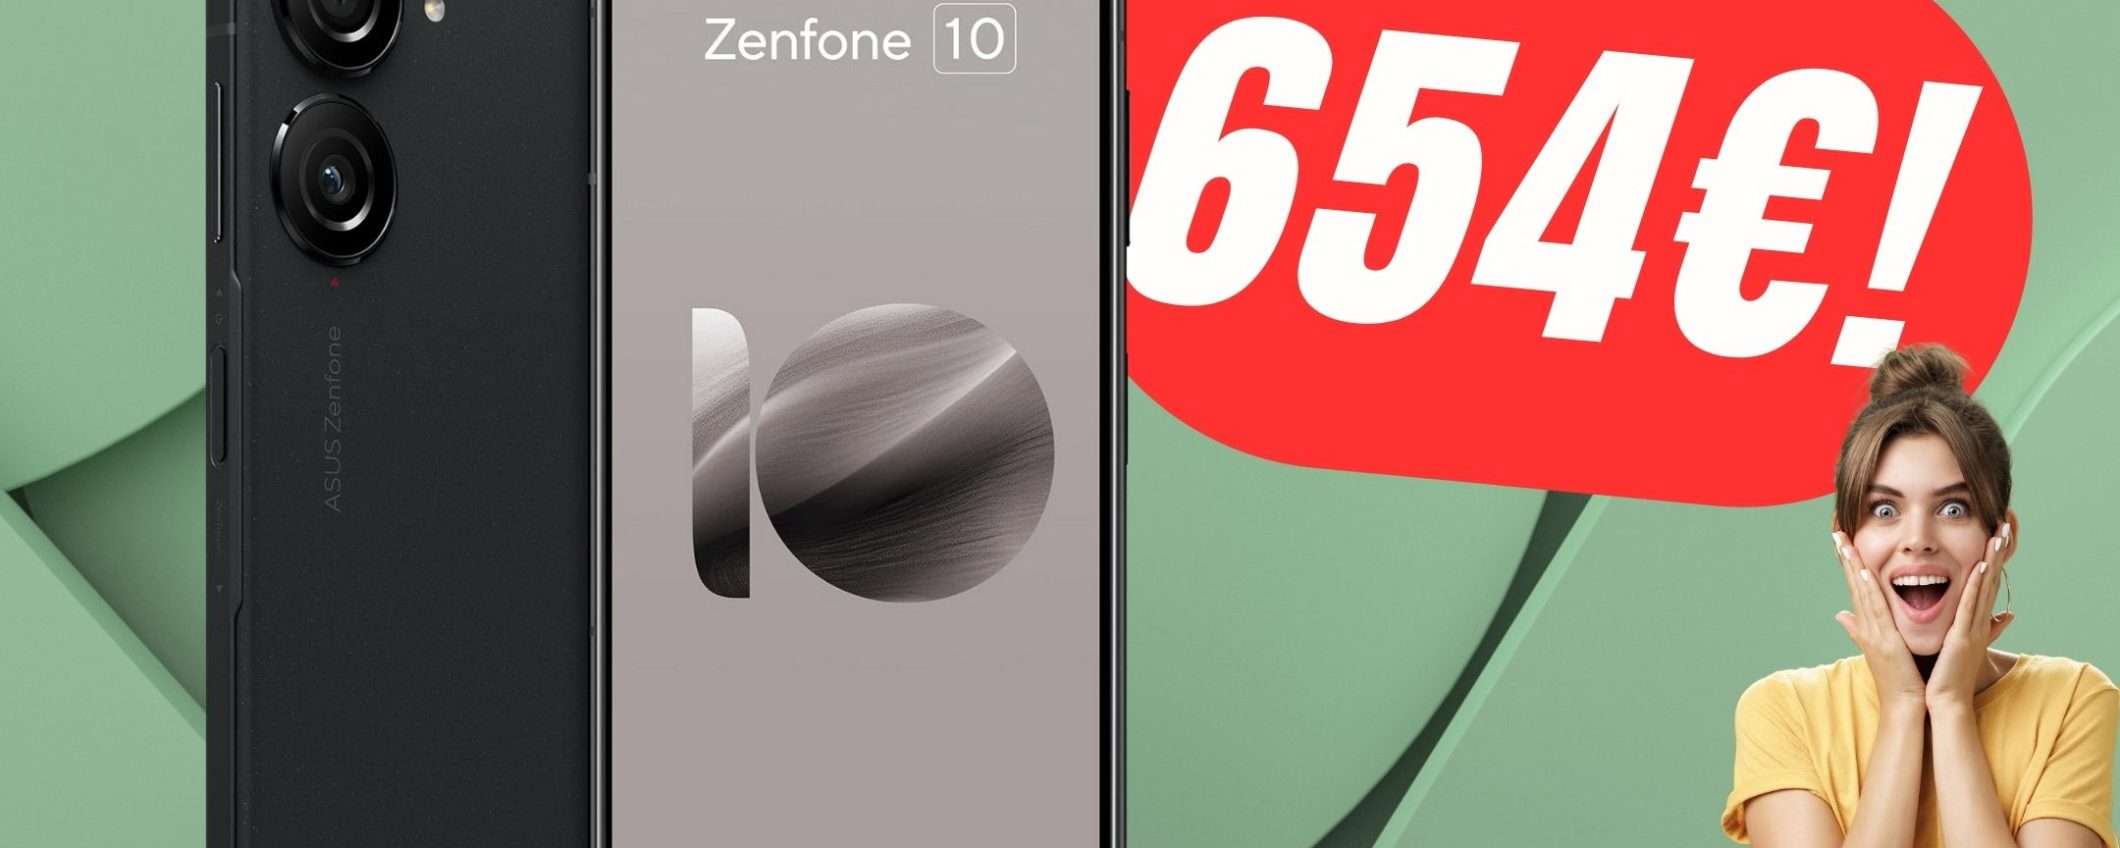 Asus Zenfone 10 in offerta su Amazon: formato mini, prestazioni super